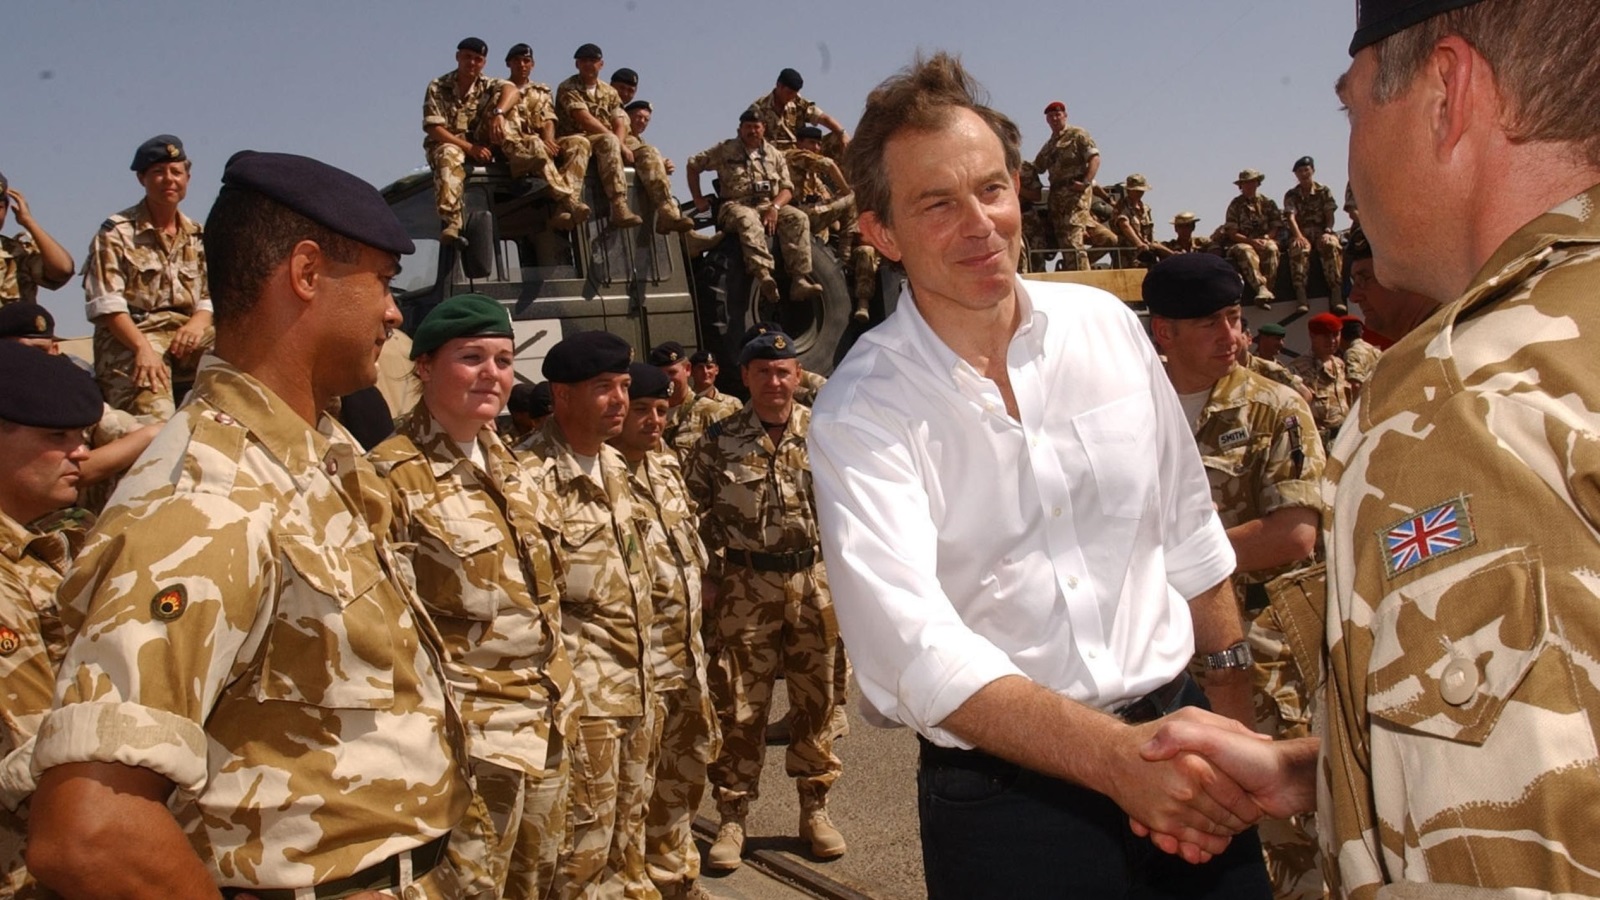 ‪بلير يتفقد قوات بريطانية في أم قصر جنوبي العراق نهاية مايو/أيار 2003‬ بلير يتفقد قوات بريطانية في أم قصر جنوبي العراق نهاية مايو/أيار 2003 (رويترز-أرشيف)